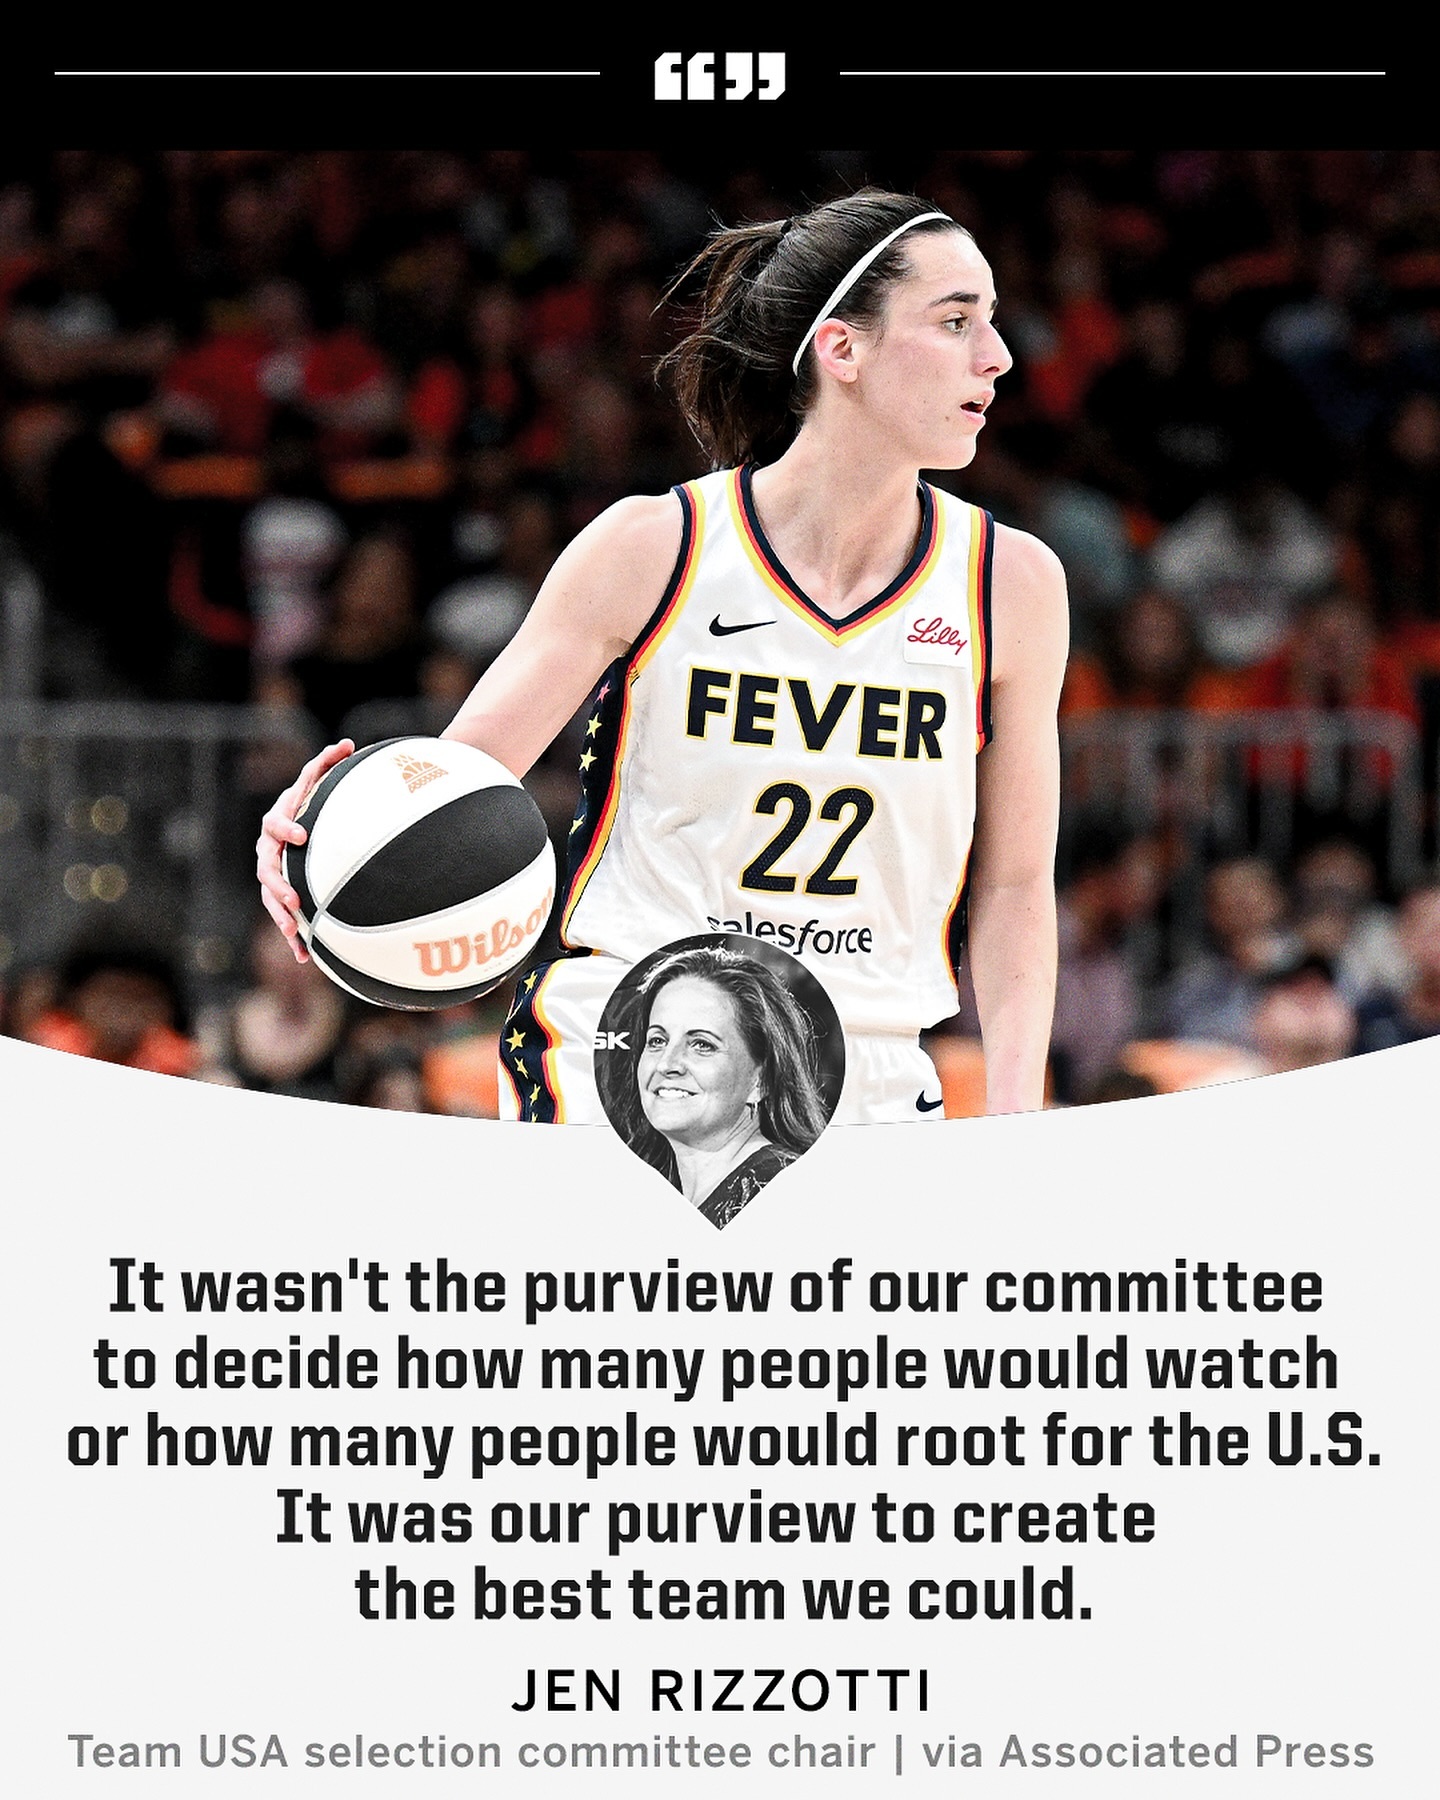 美国女篮国家队选拔委员会：我们的工作不是决定有多少人会看比赛